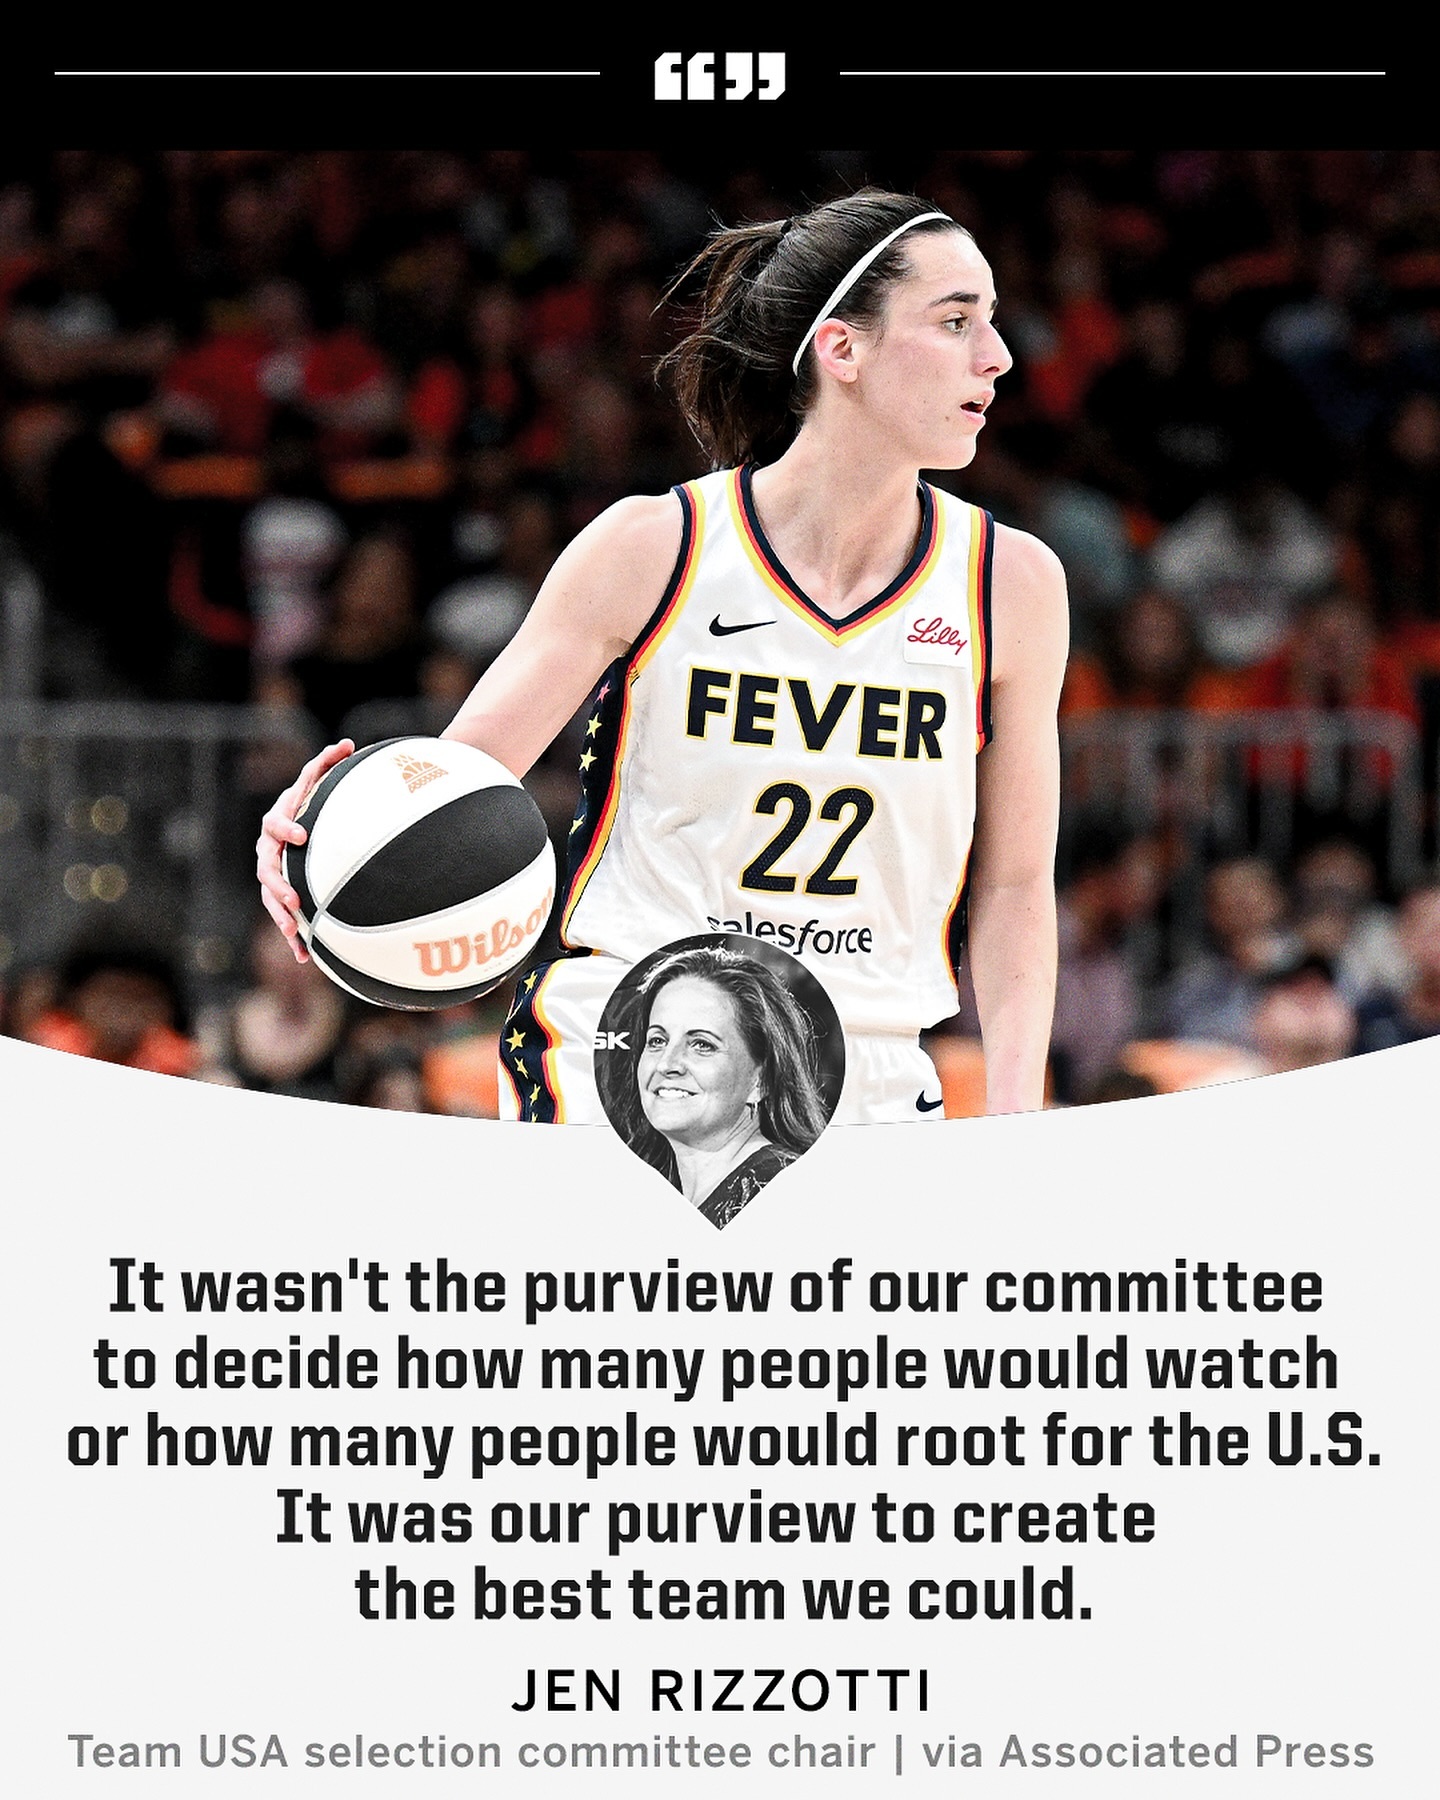 美国女篮国家队选拔委员会：我们的工作不是决定有多少人会看比赛